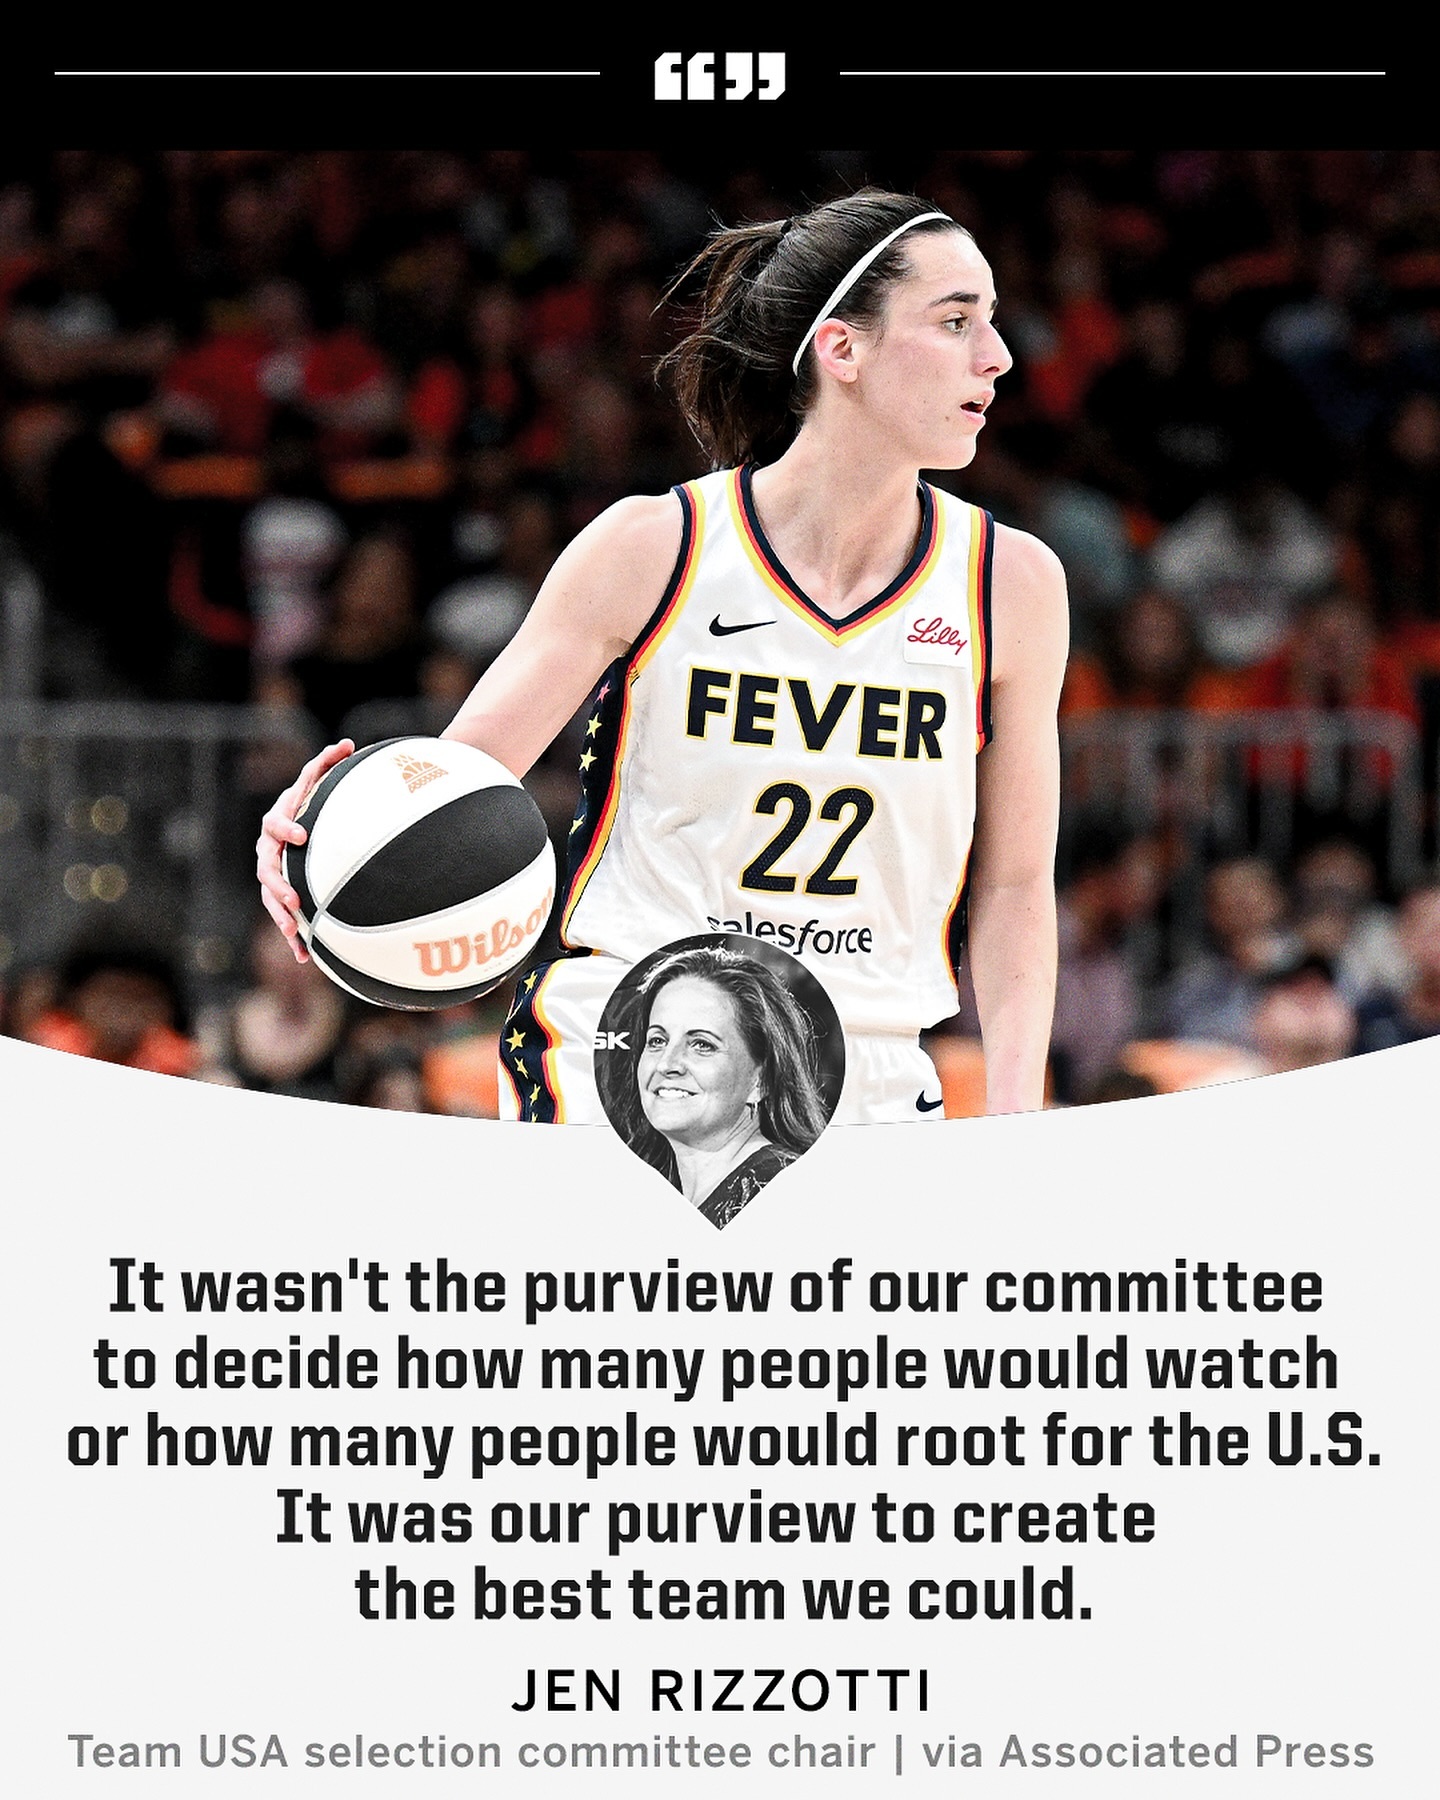 美国女篮国家队选拔委员会：我们的工作不是决定有多少人会看比赛